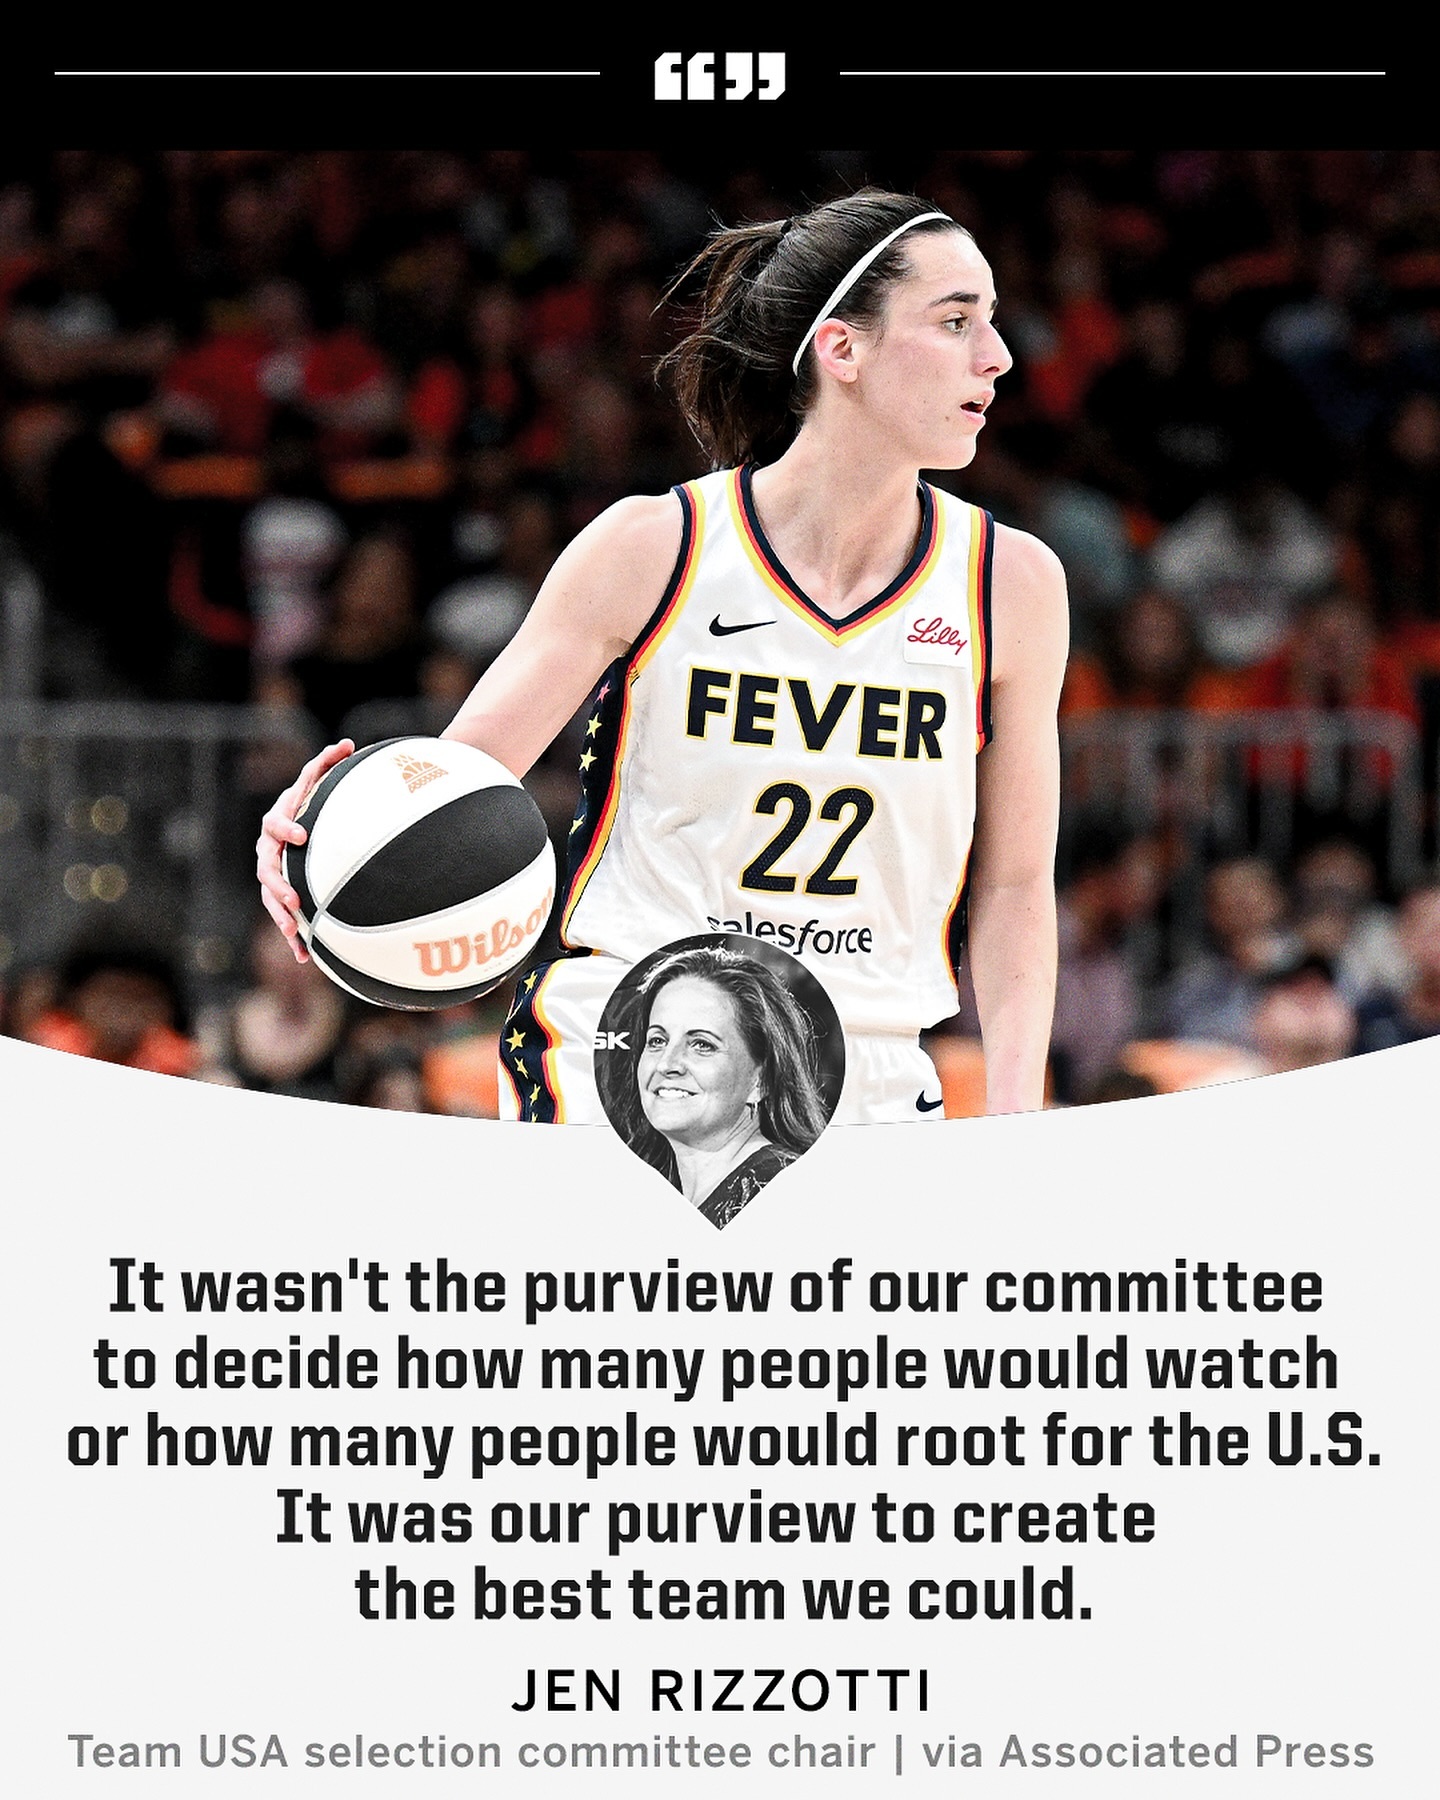 美国女篮国家队选拔委员会：我们的工作不是决定有多少人会看比赛